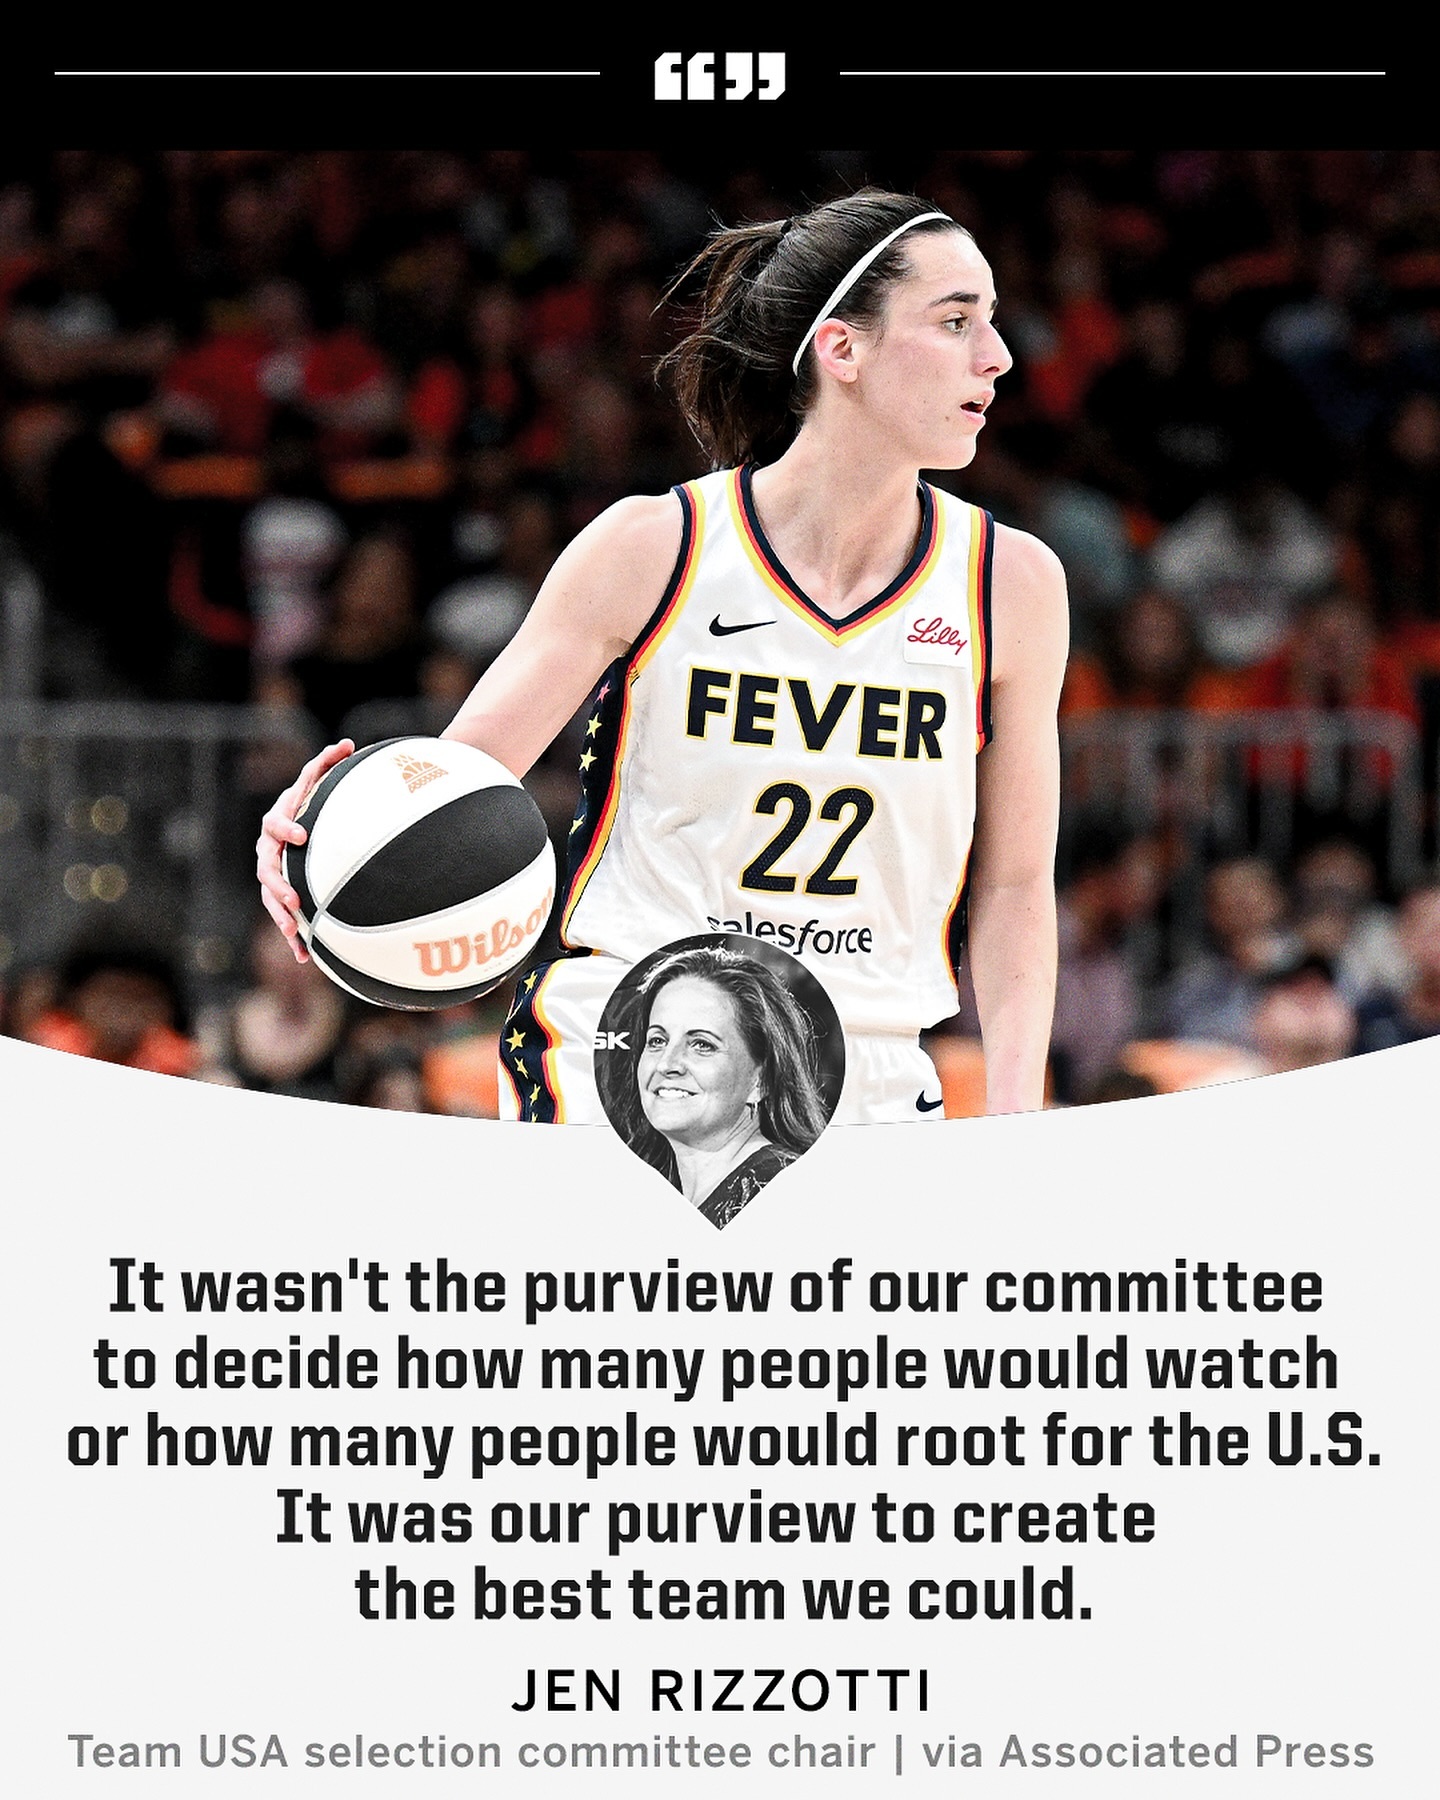 美国女篮国家队选拔委员会：我们的工作不是决定有多少人会看比赛